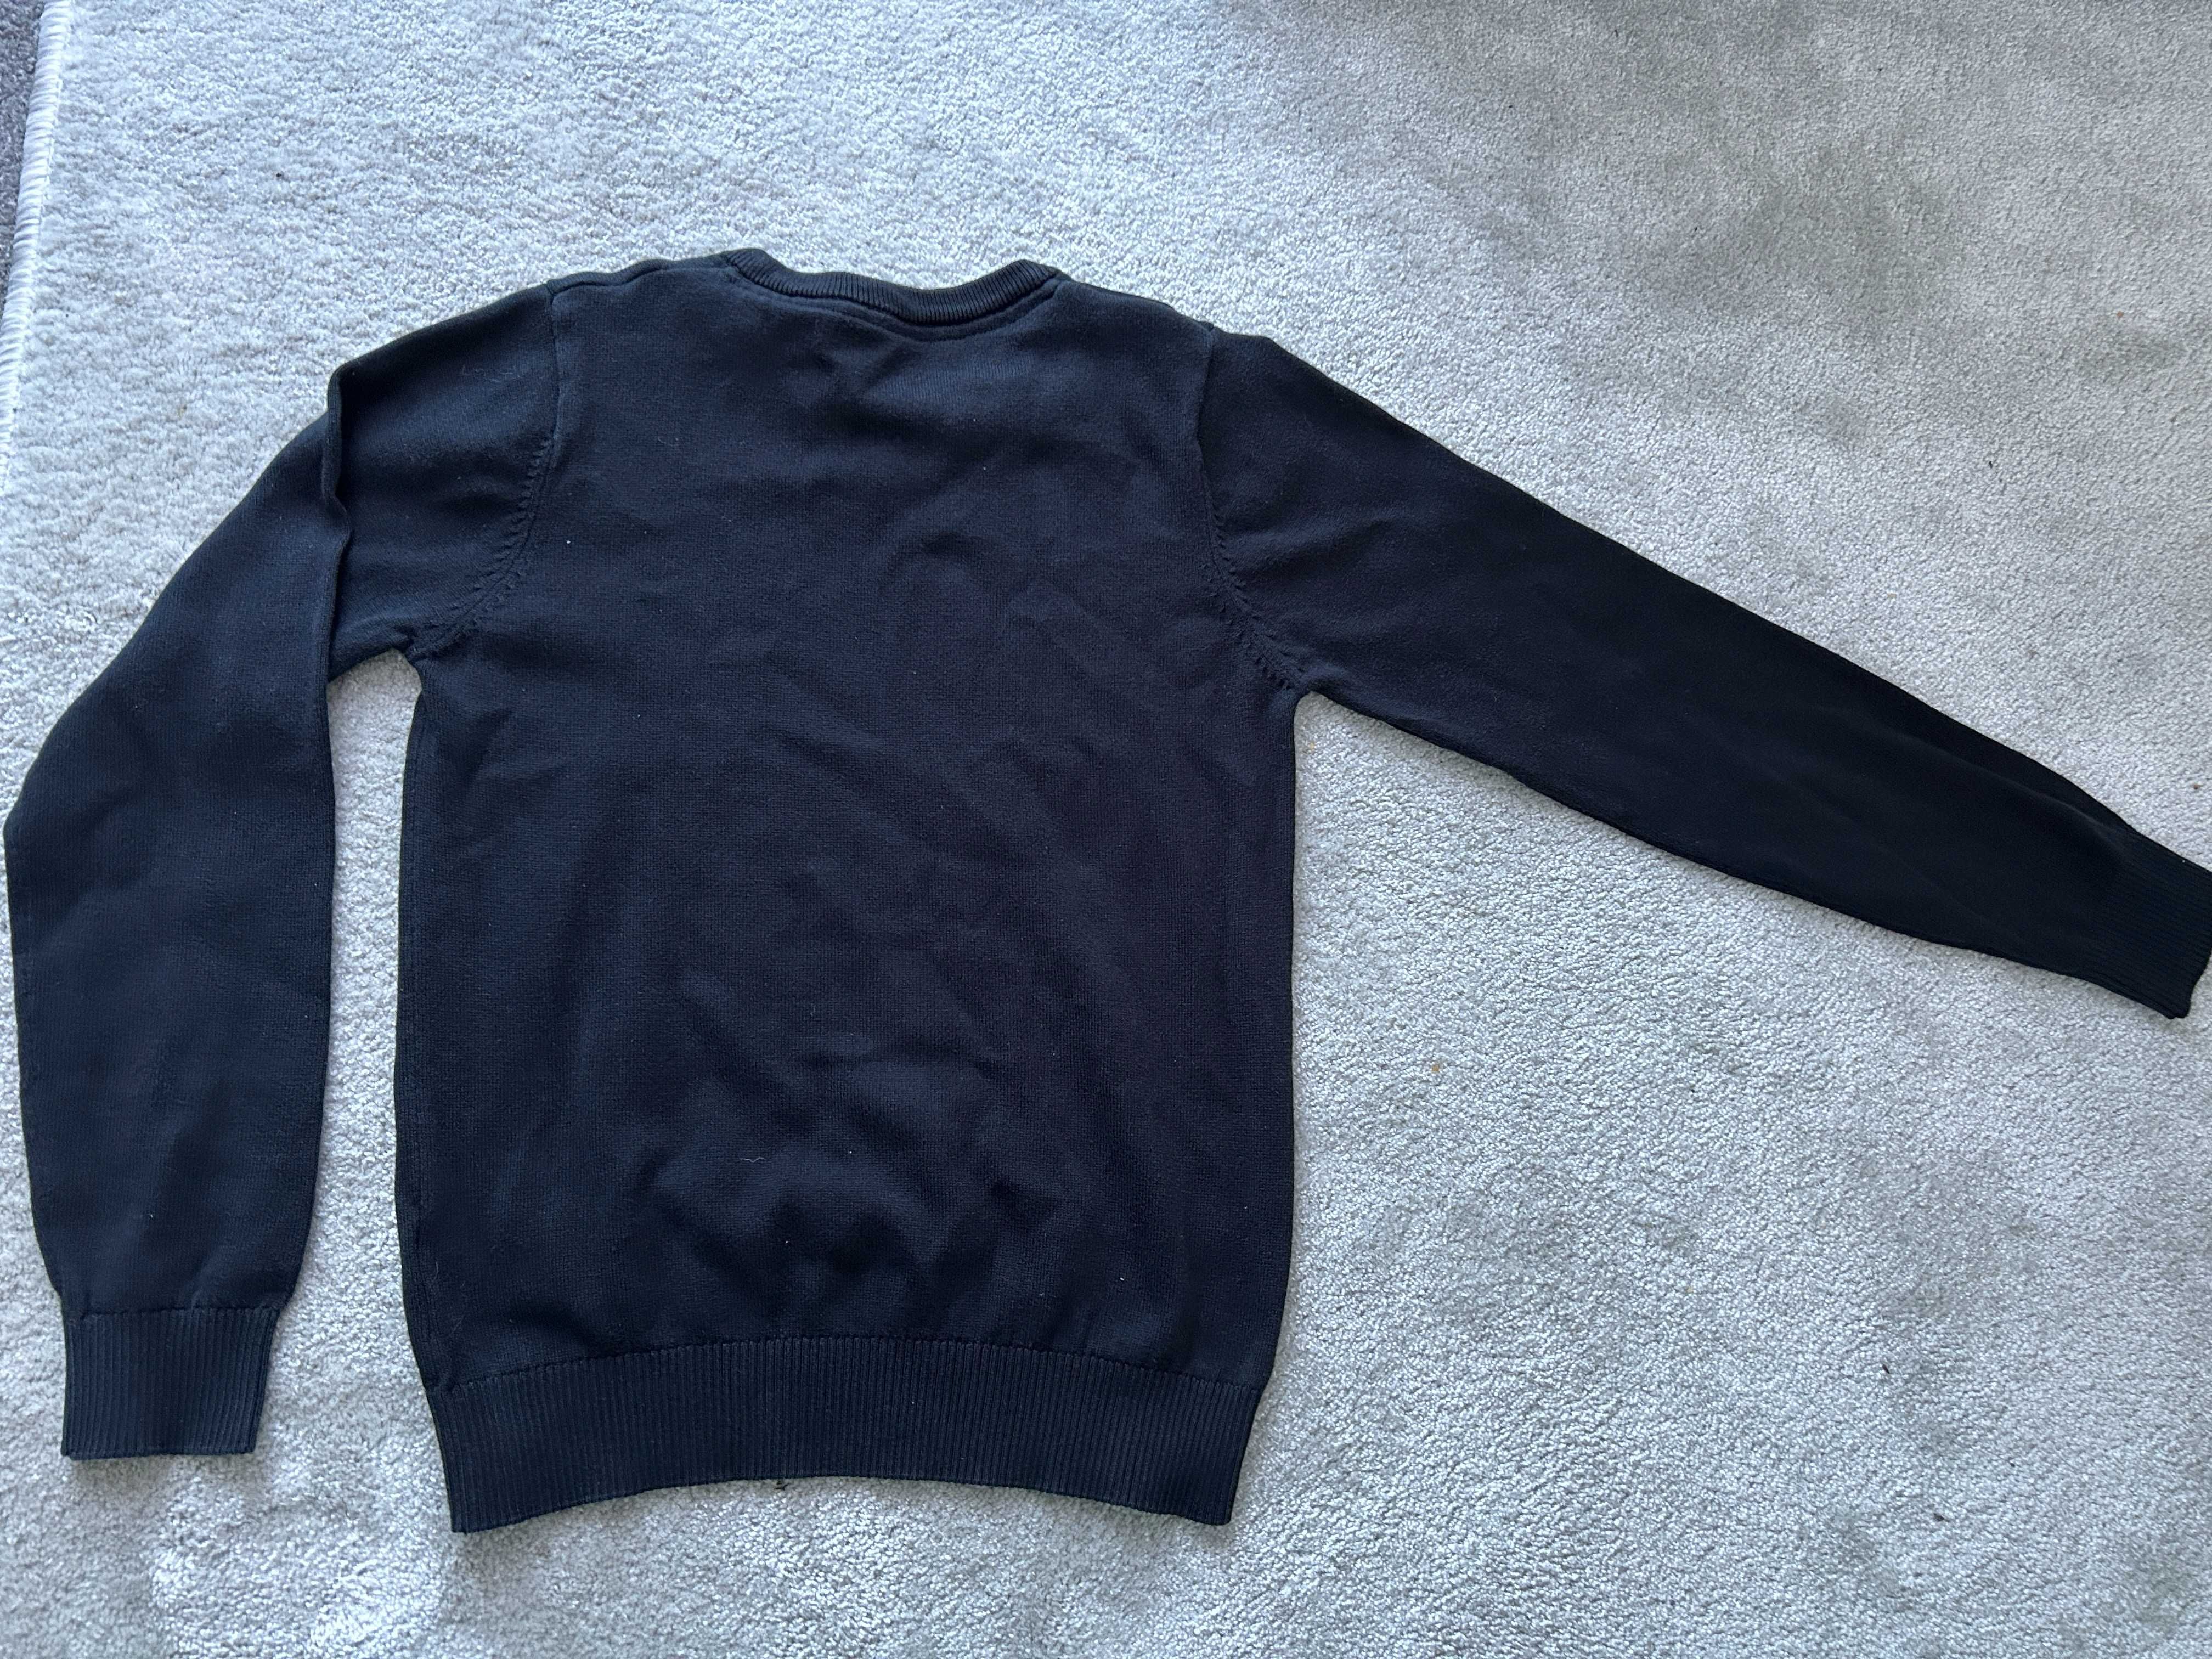 sweter czarny M&S 146 chłopiec